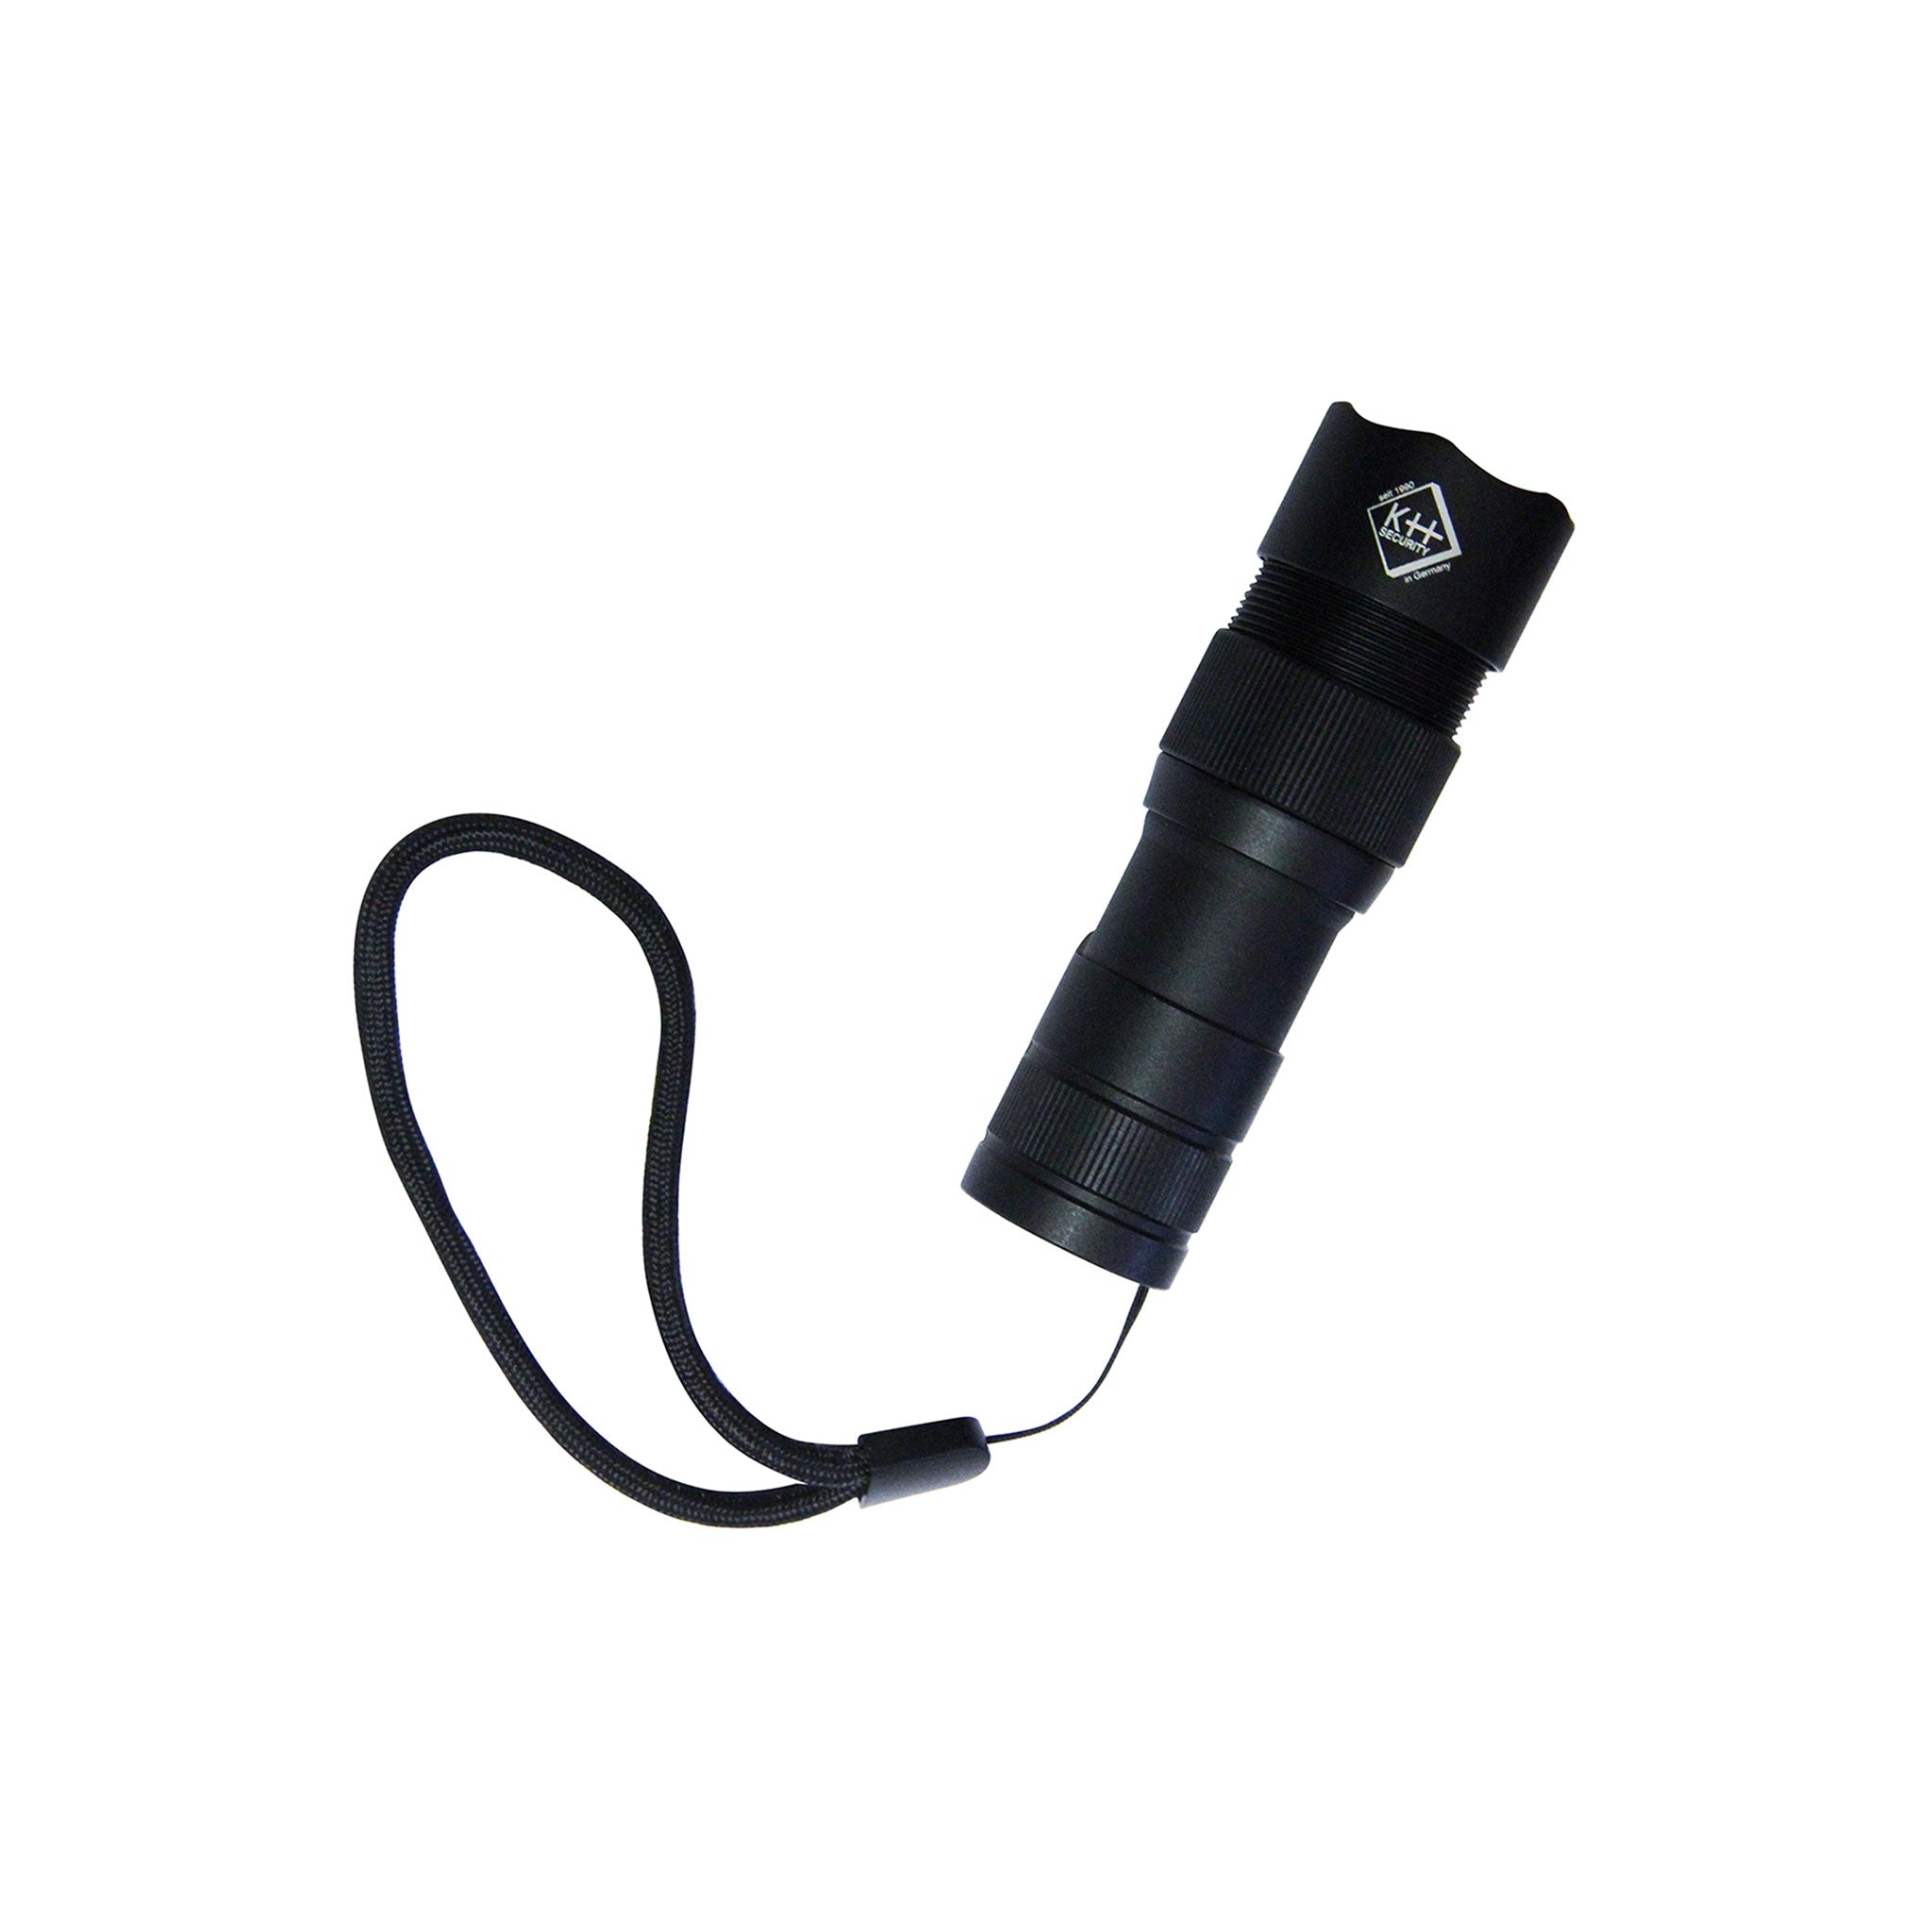 Taschenlampe-2in1-Pro-Alarm-2.jpg